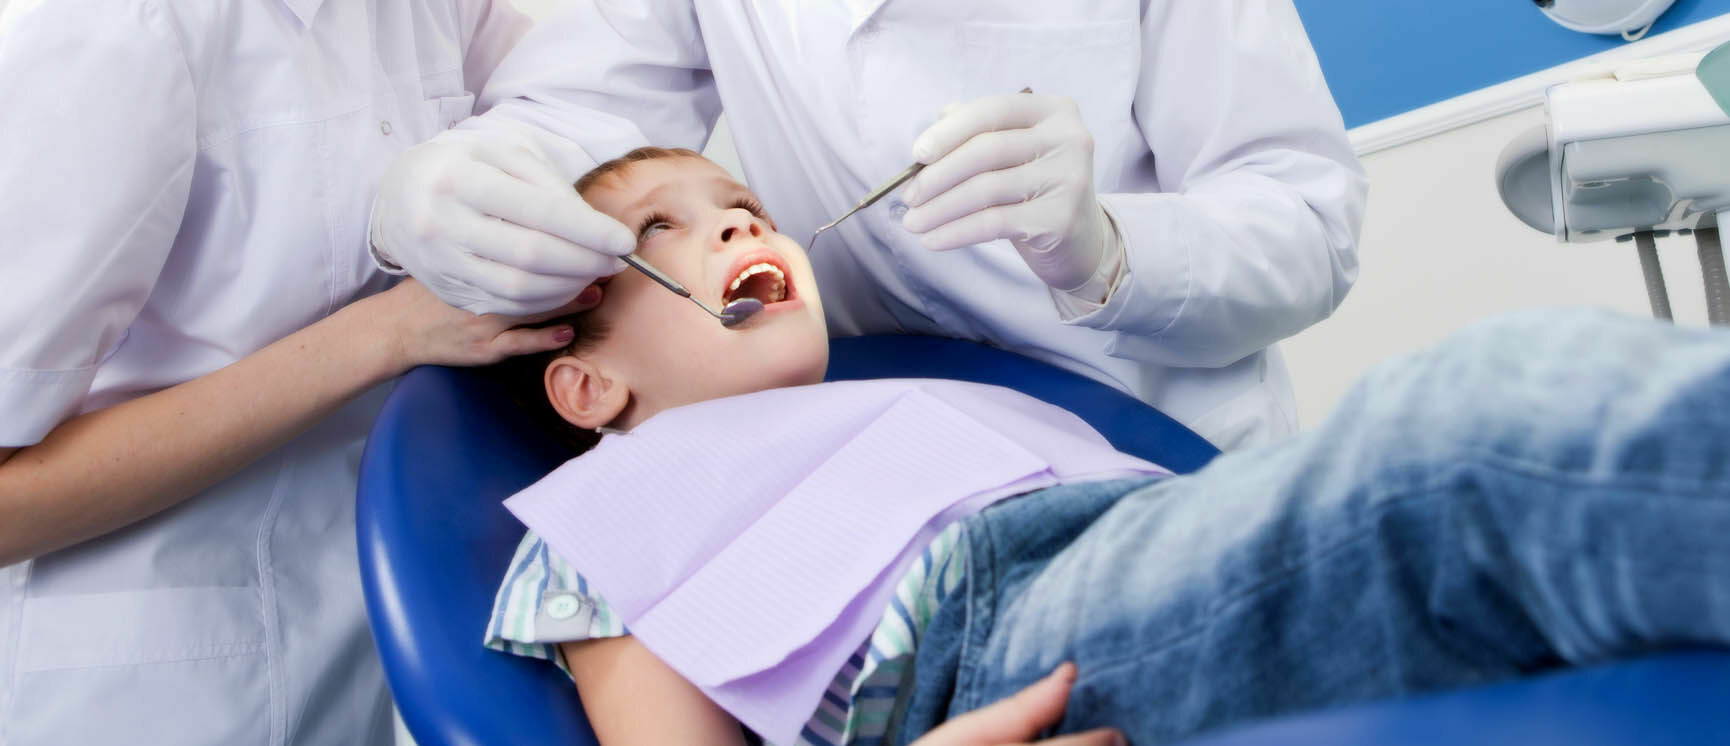 Девятилетняя девочка умерла в кресле стоматолога в Оренбурге после неудачной операции